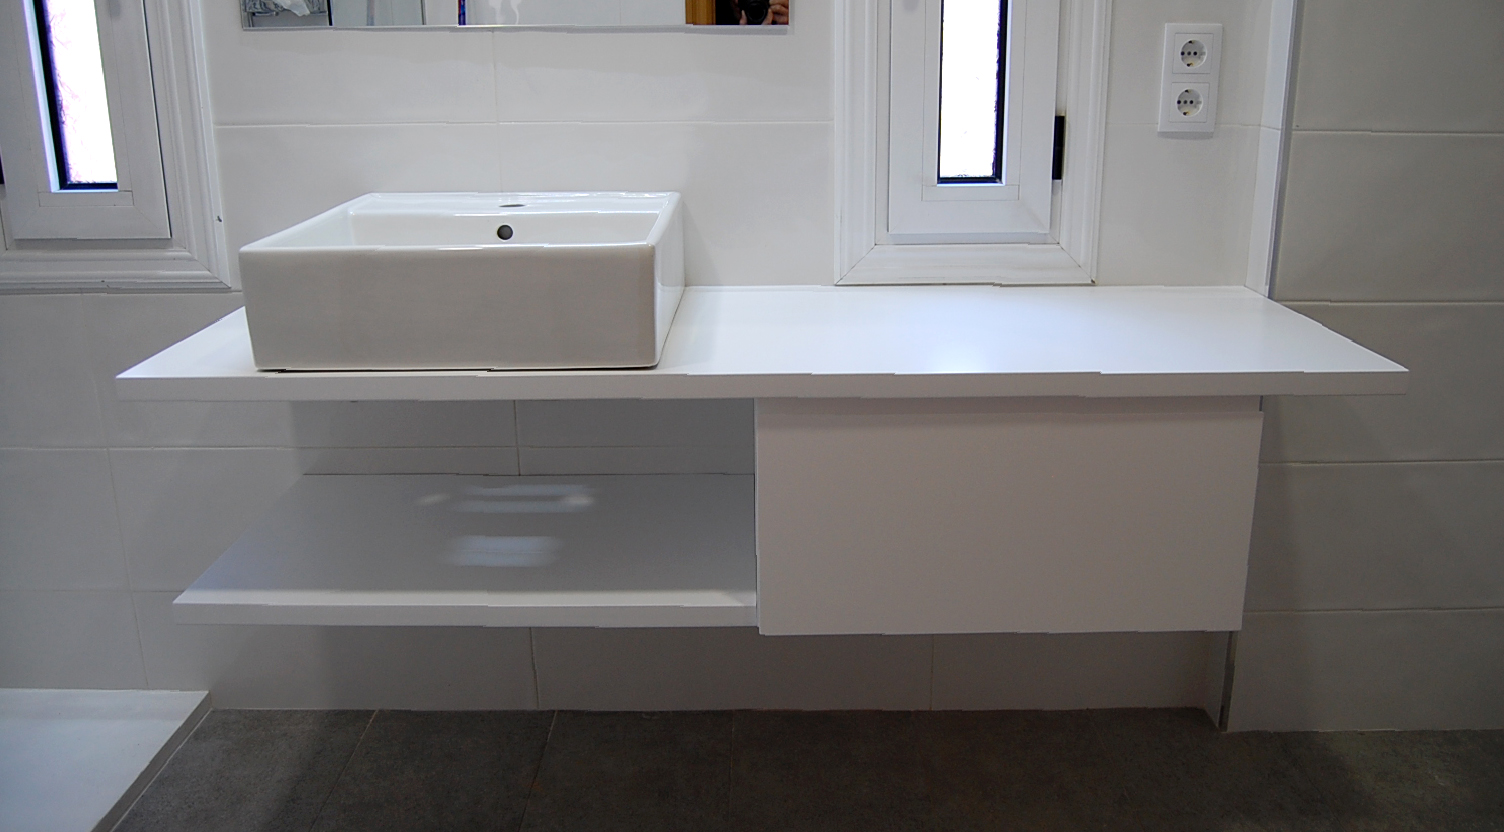 Mueble de baño a medida suspendido lacado blanco satinado con uñero. Encimera hidrófuga, cajón con guía de extracción total con freno y estante.